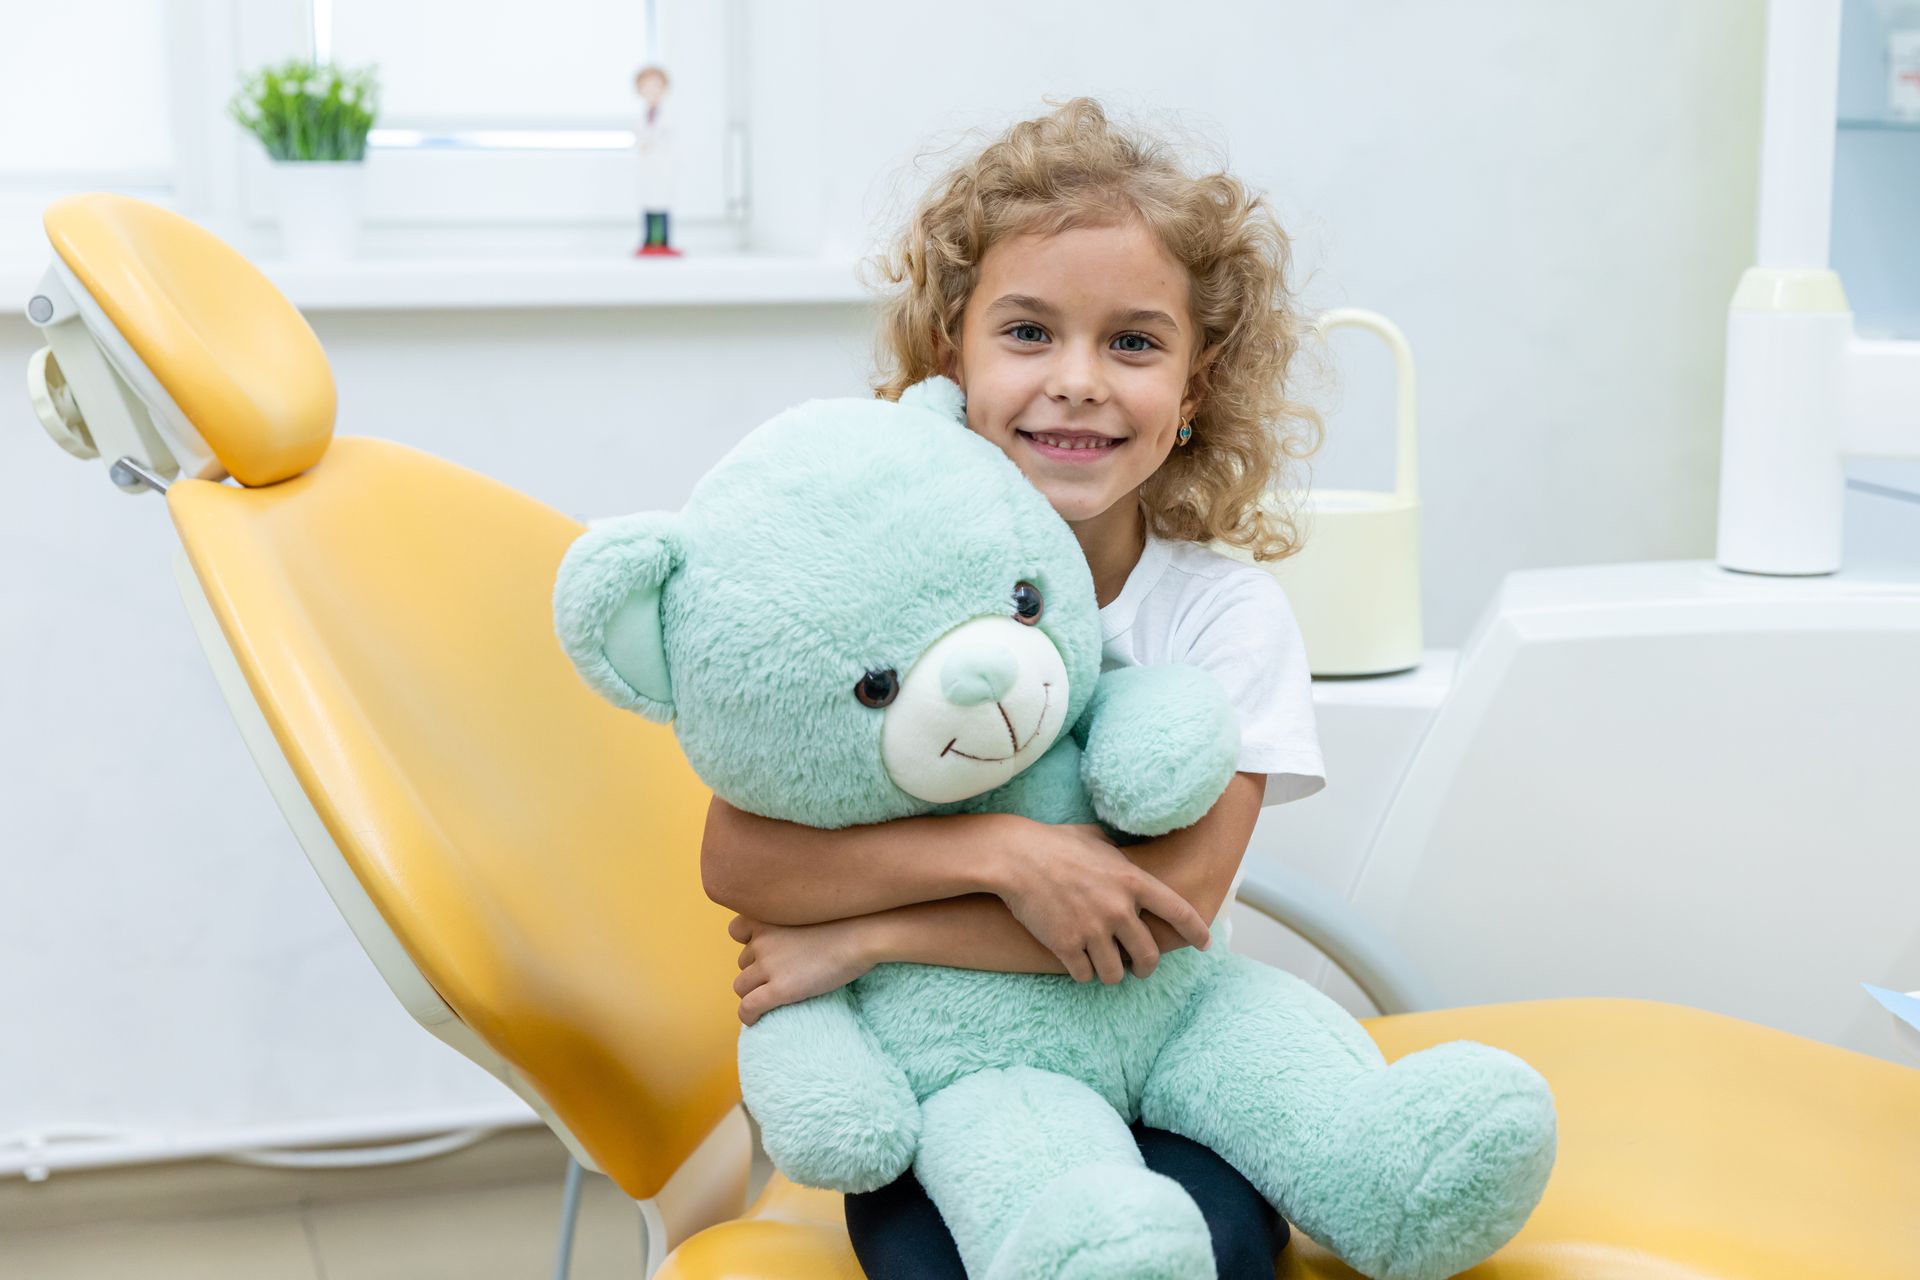 Bambini possono avere  problemi dentali : carie denti da latte, gengiviti, denti sensibili.